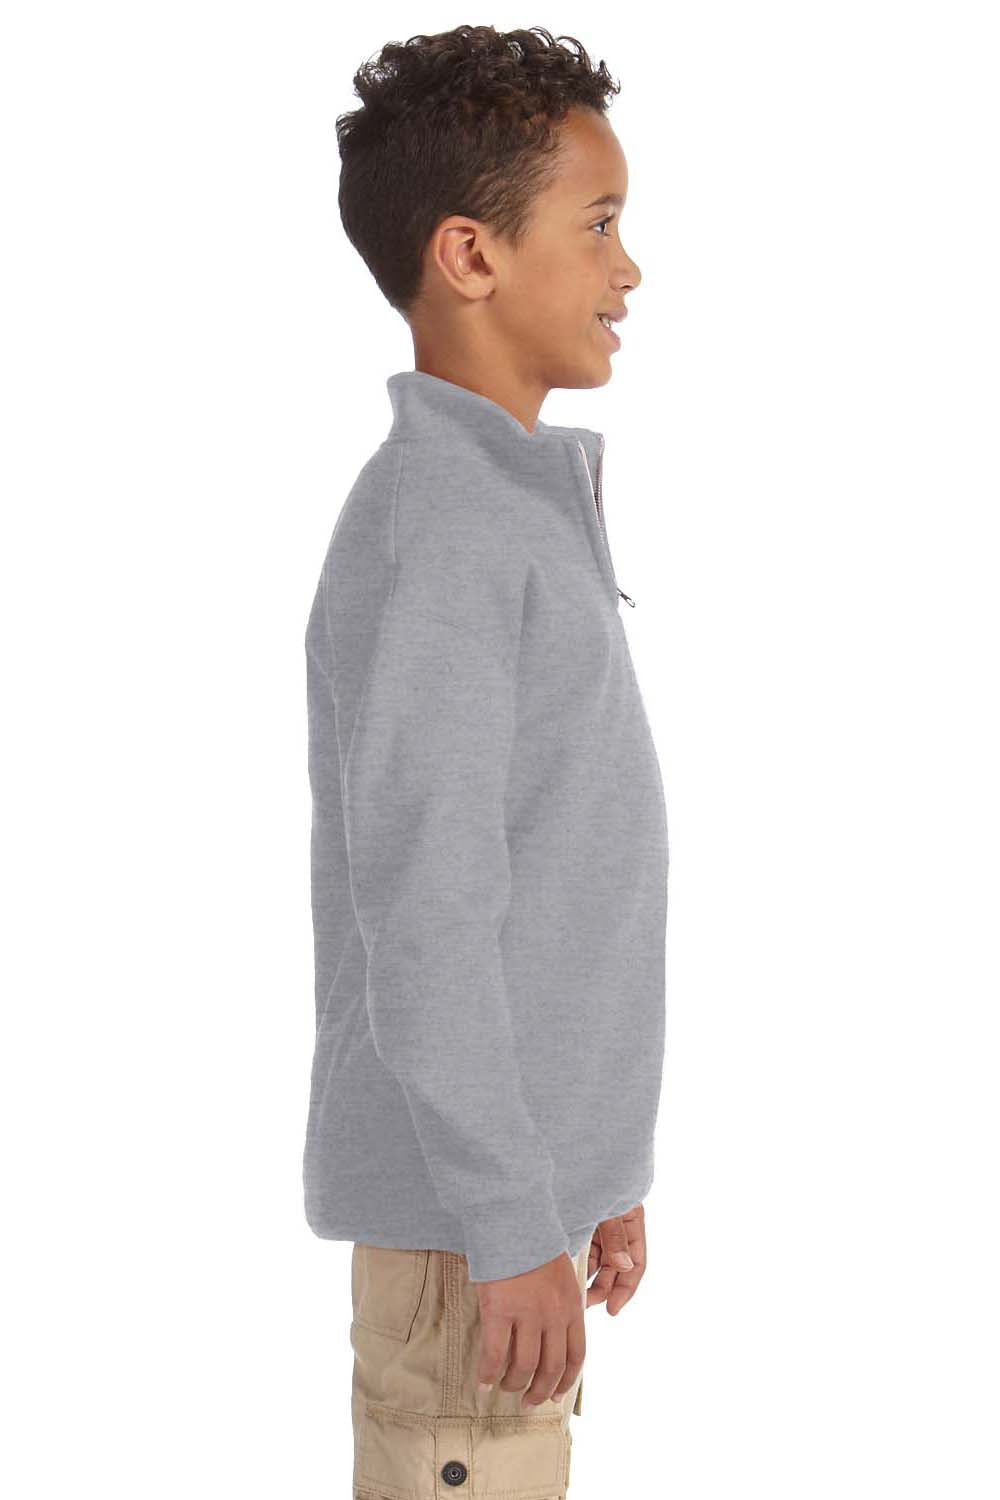 Jerzees 995Y Youth NuBlend Fleece 1/4 Zip Sweatshirt Oxford Grey Side